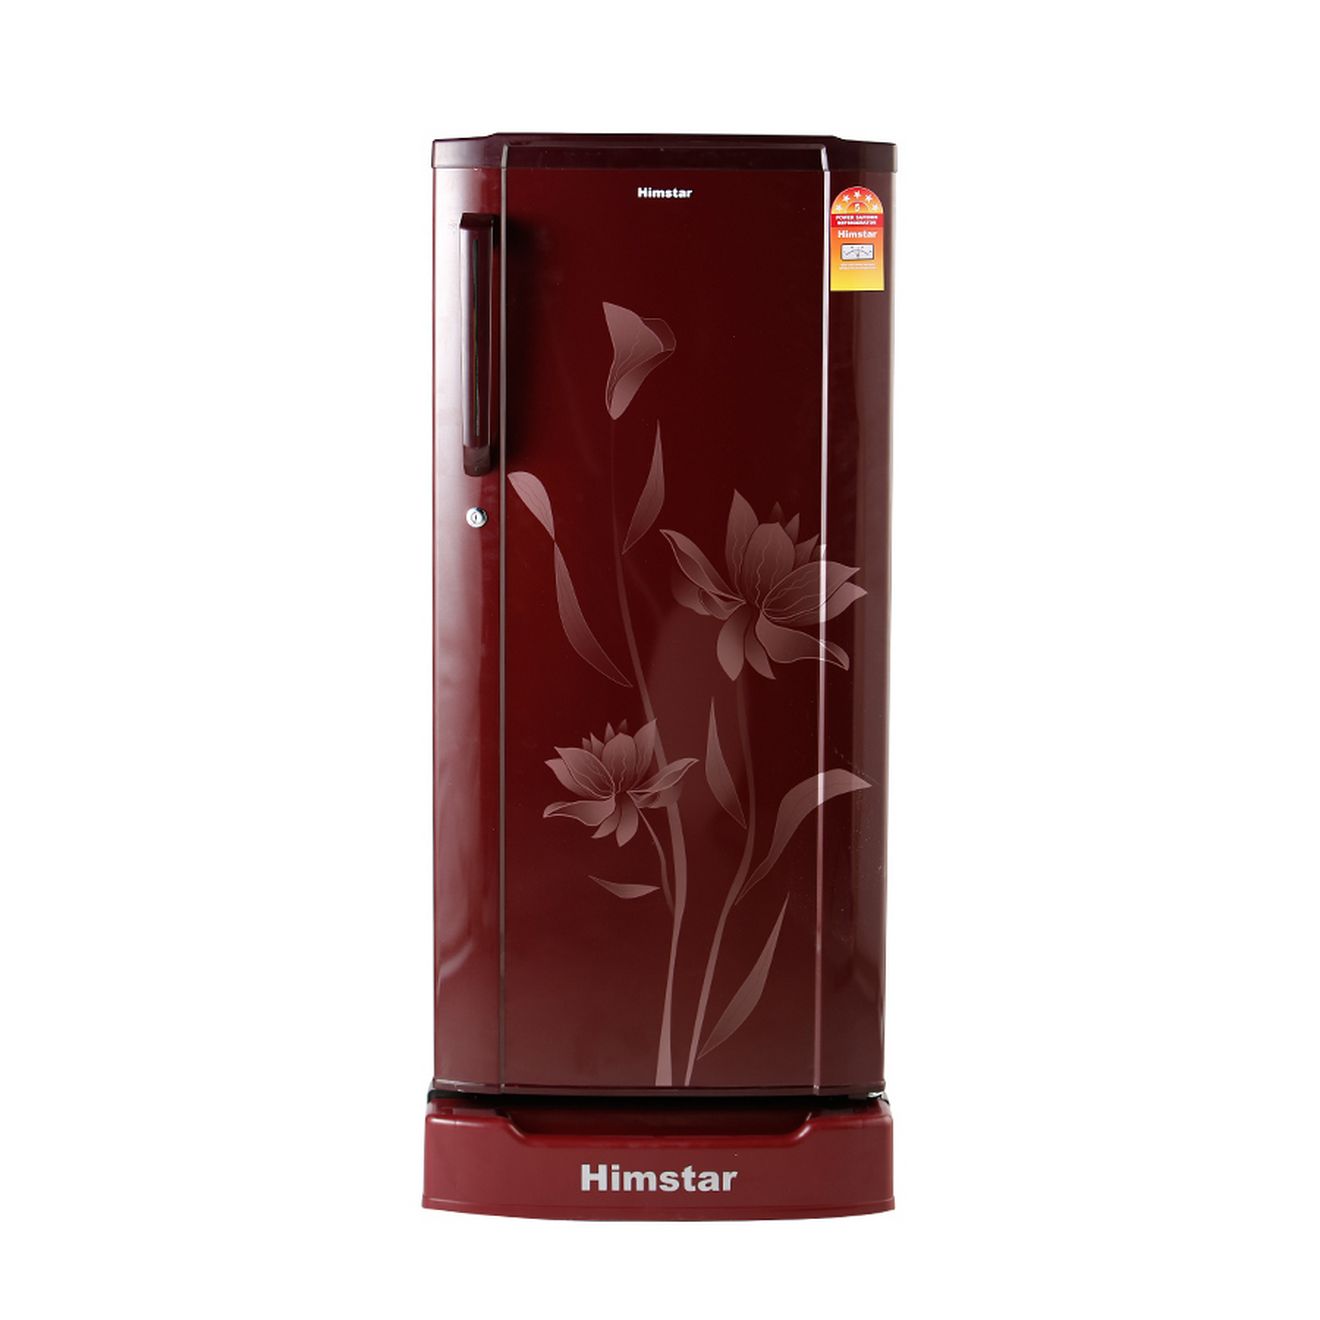 Himstar refrigerator price in nepal